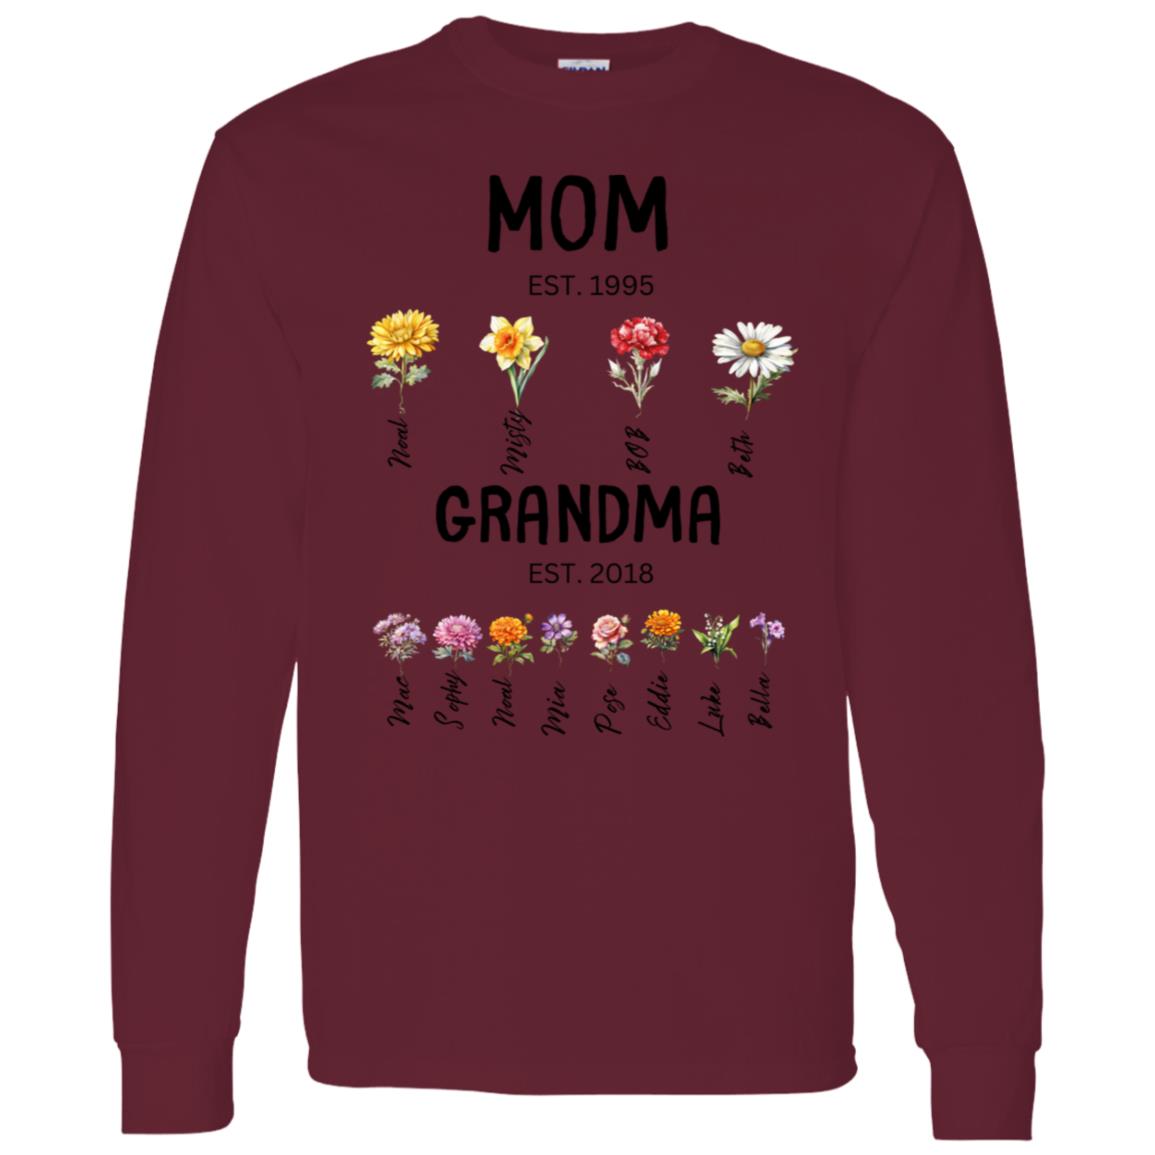 Mom/Grandma EST. Birth flowers Mom/Grandma Est. Birth Flowers. Long Sleeve Shirt